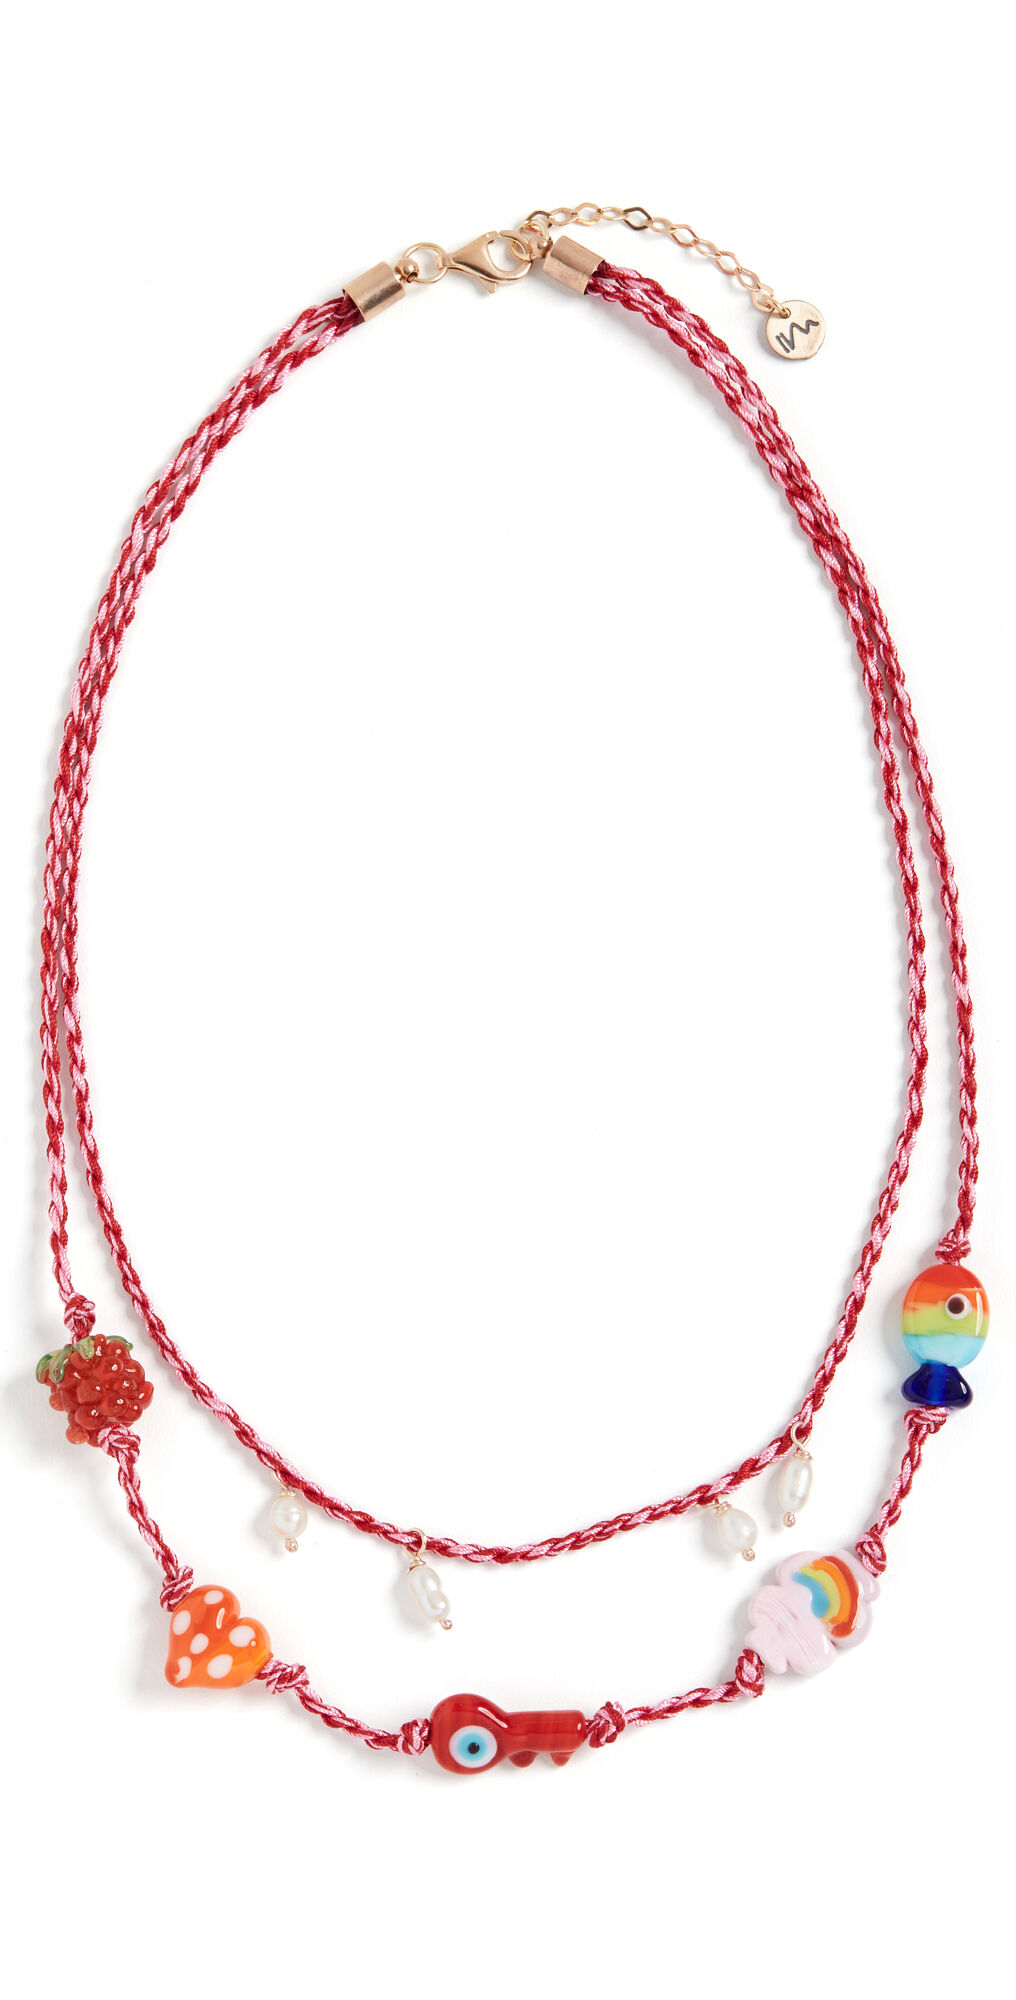 Maison Irem Cord Necklace Dream Mix Colors One Size  Mix Colors  size:One Size